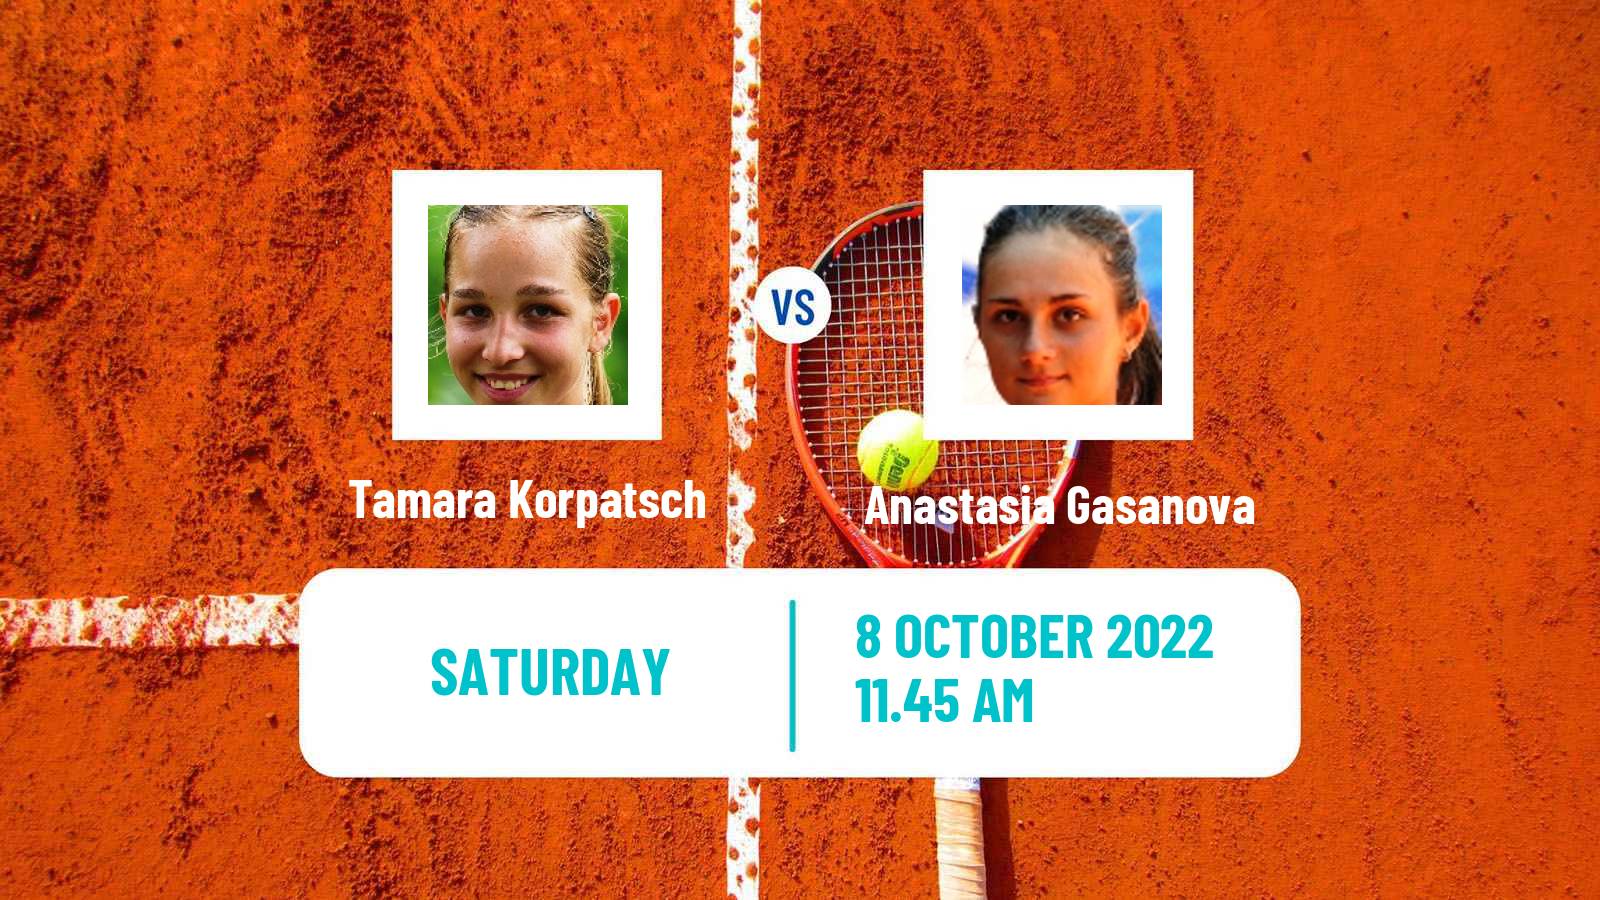 Tennis WTA Cluj Napoca Tamara Korpatsch - Anastasia Gasanova